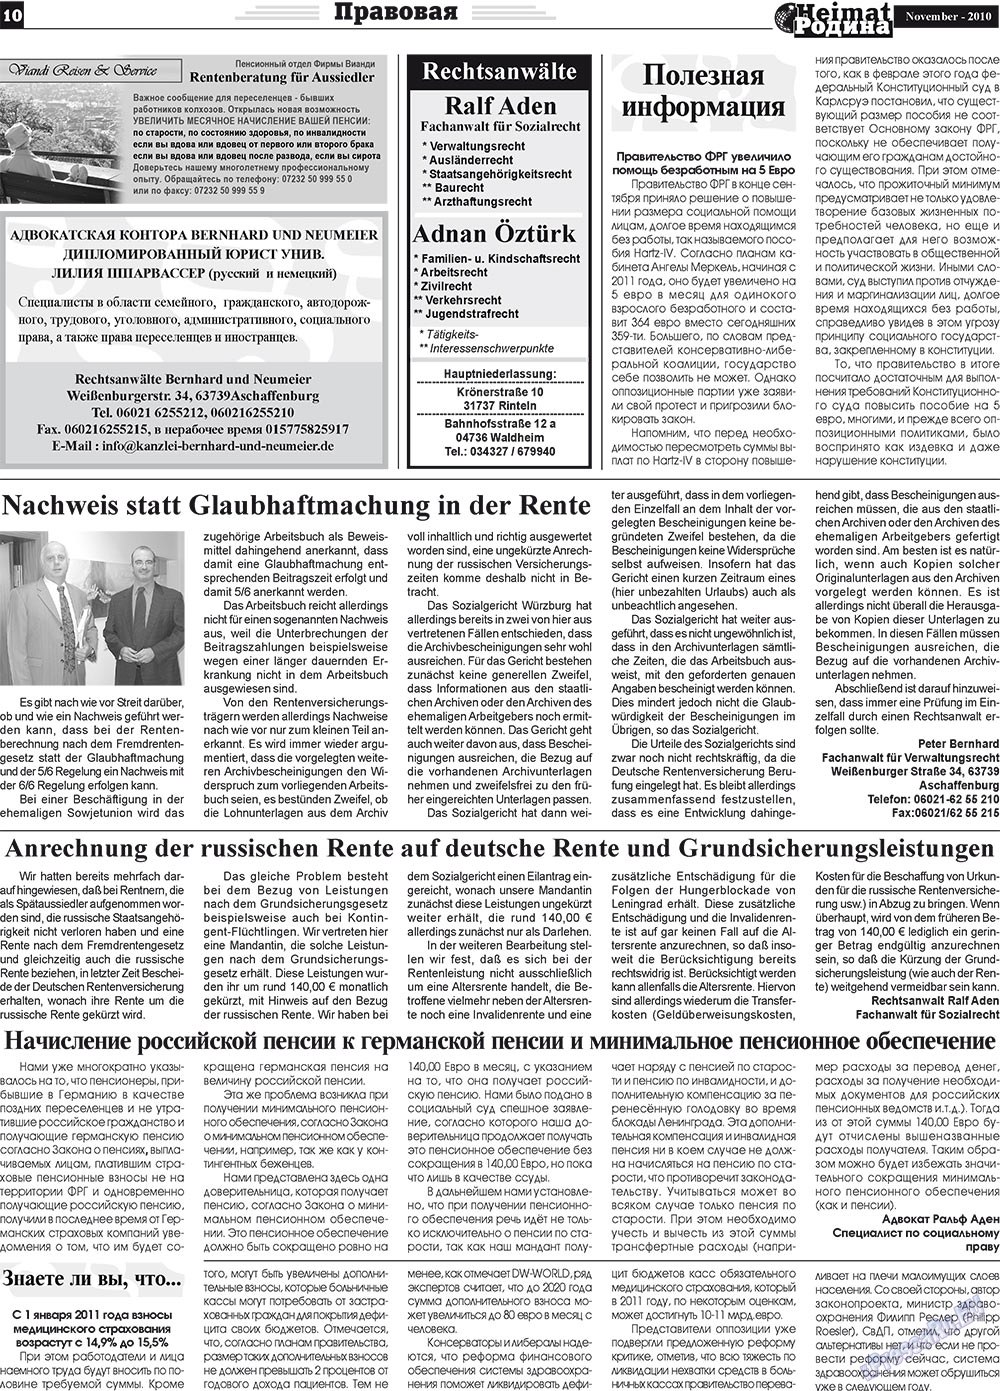 Heimat-Родина (газета). 2010 год, номер 11, стр. 10